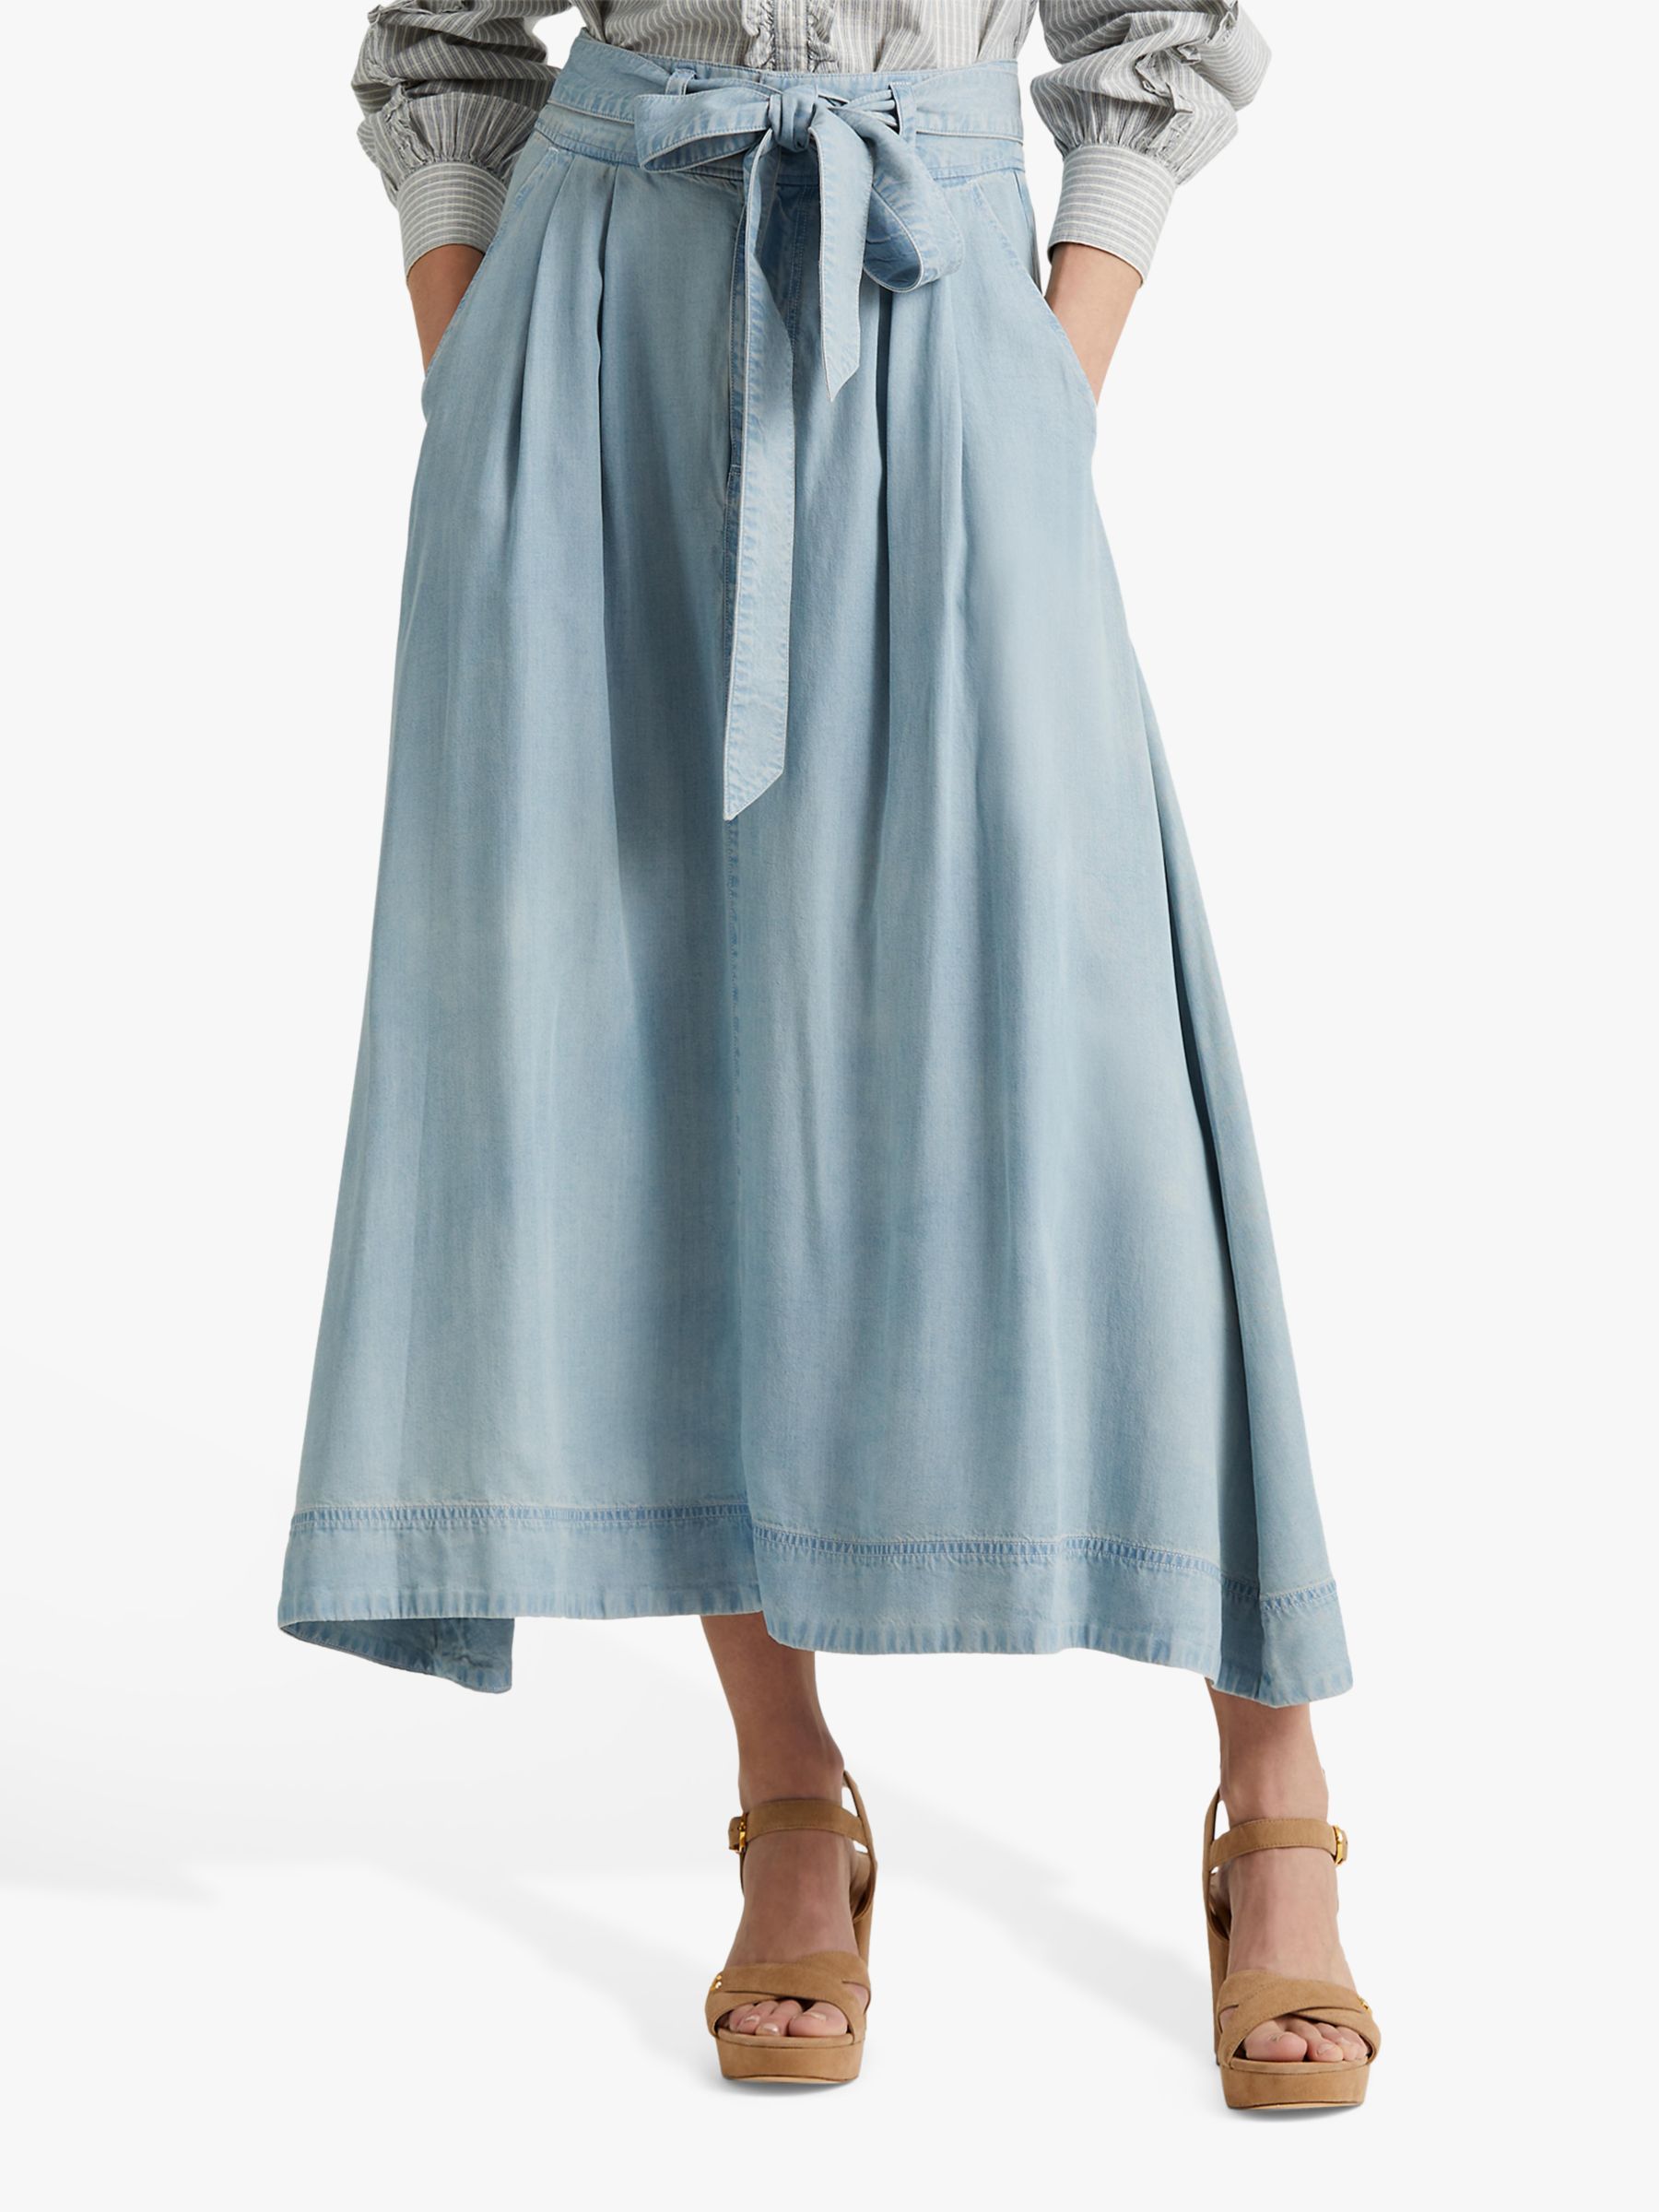 Lauren Ralph Lauren Shirlaine Belted A-Line Midi Skirt, Indigo Mist Wash